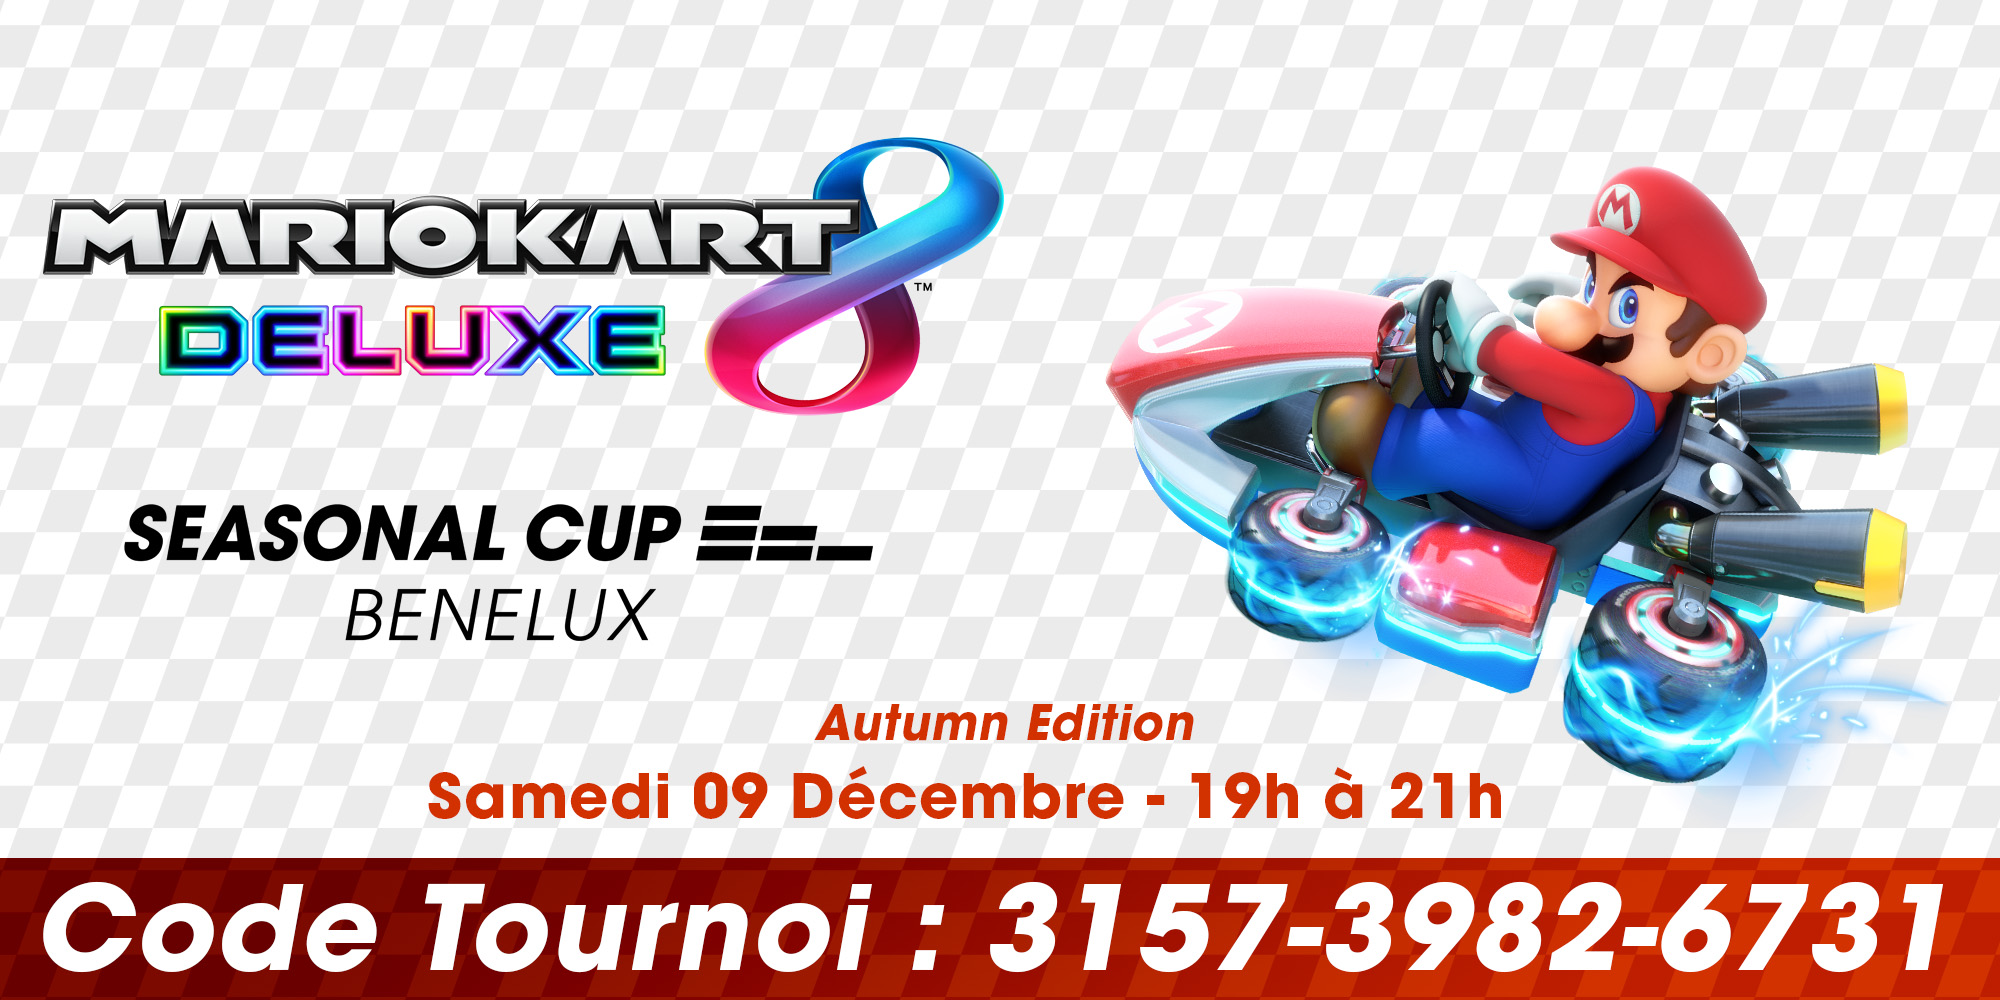 Participez à la Autumn Edition de la Mario Kart 8 Deluxe Seasonal Cup Benelux 2023 ! 